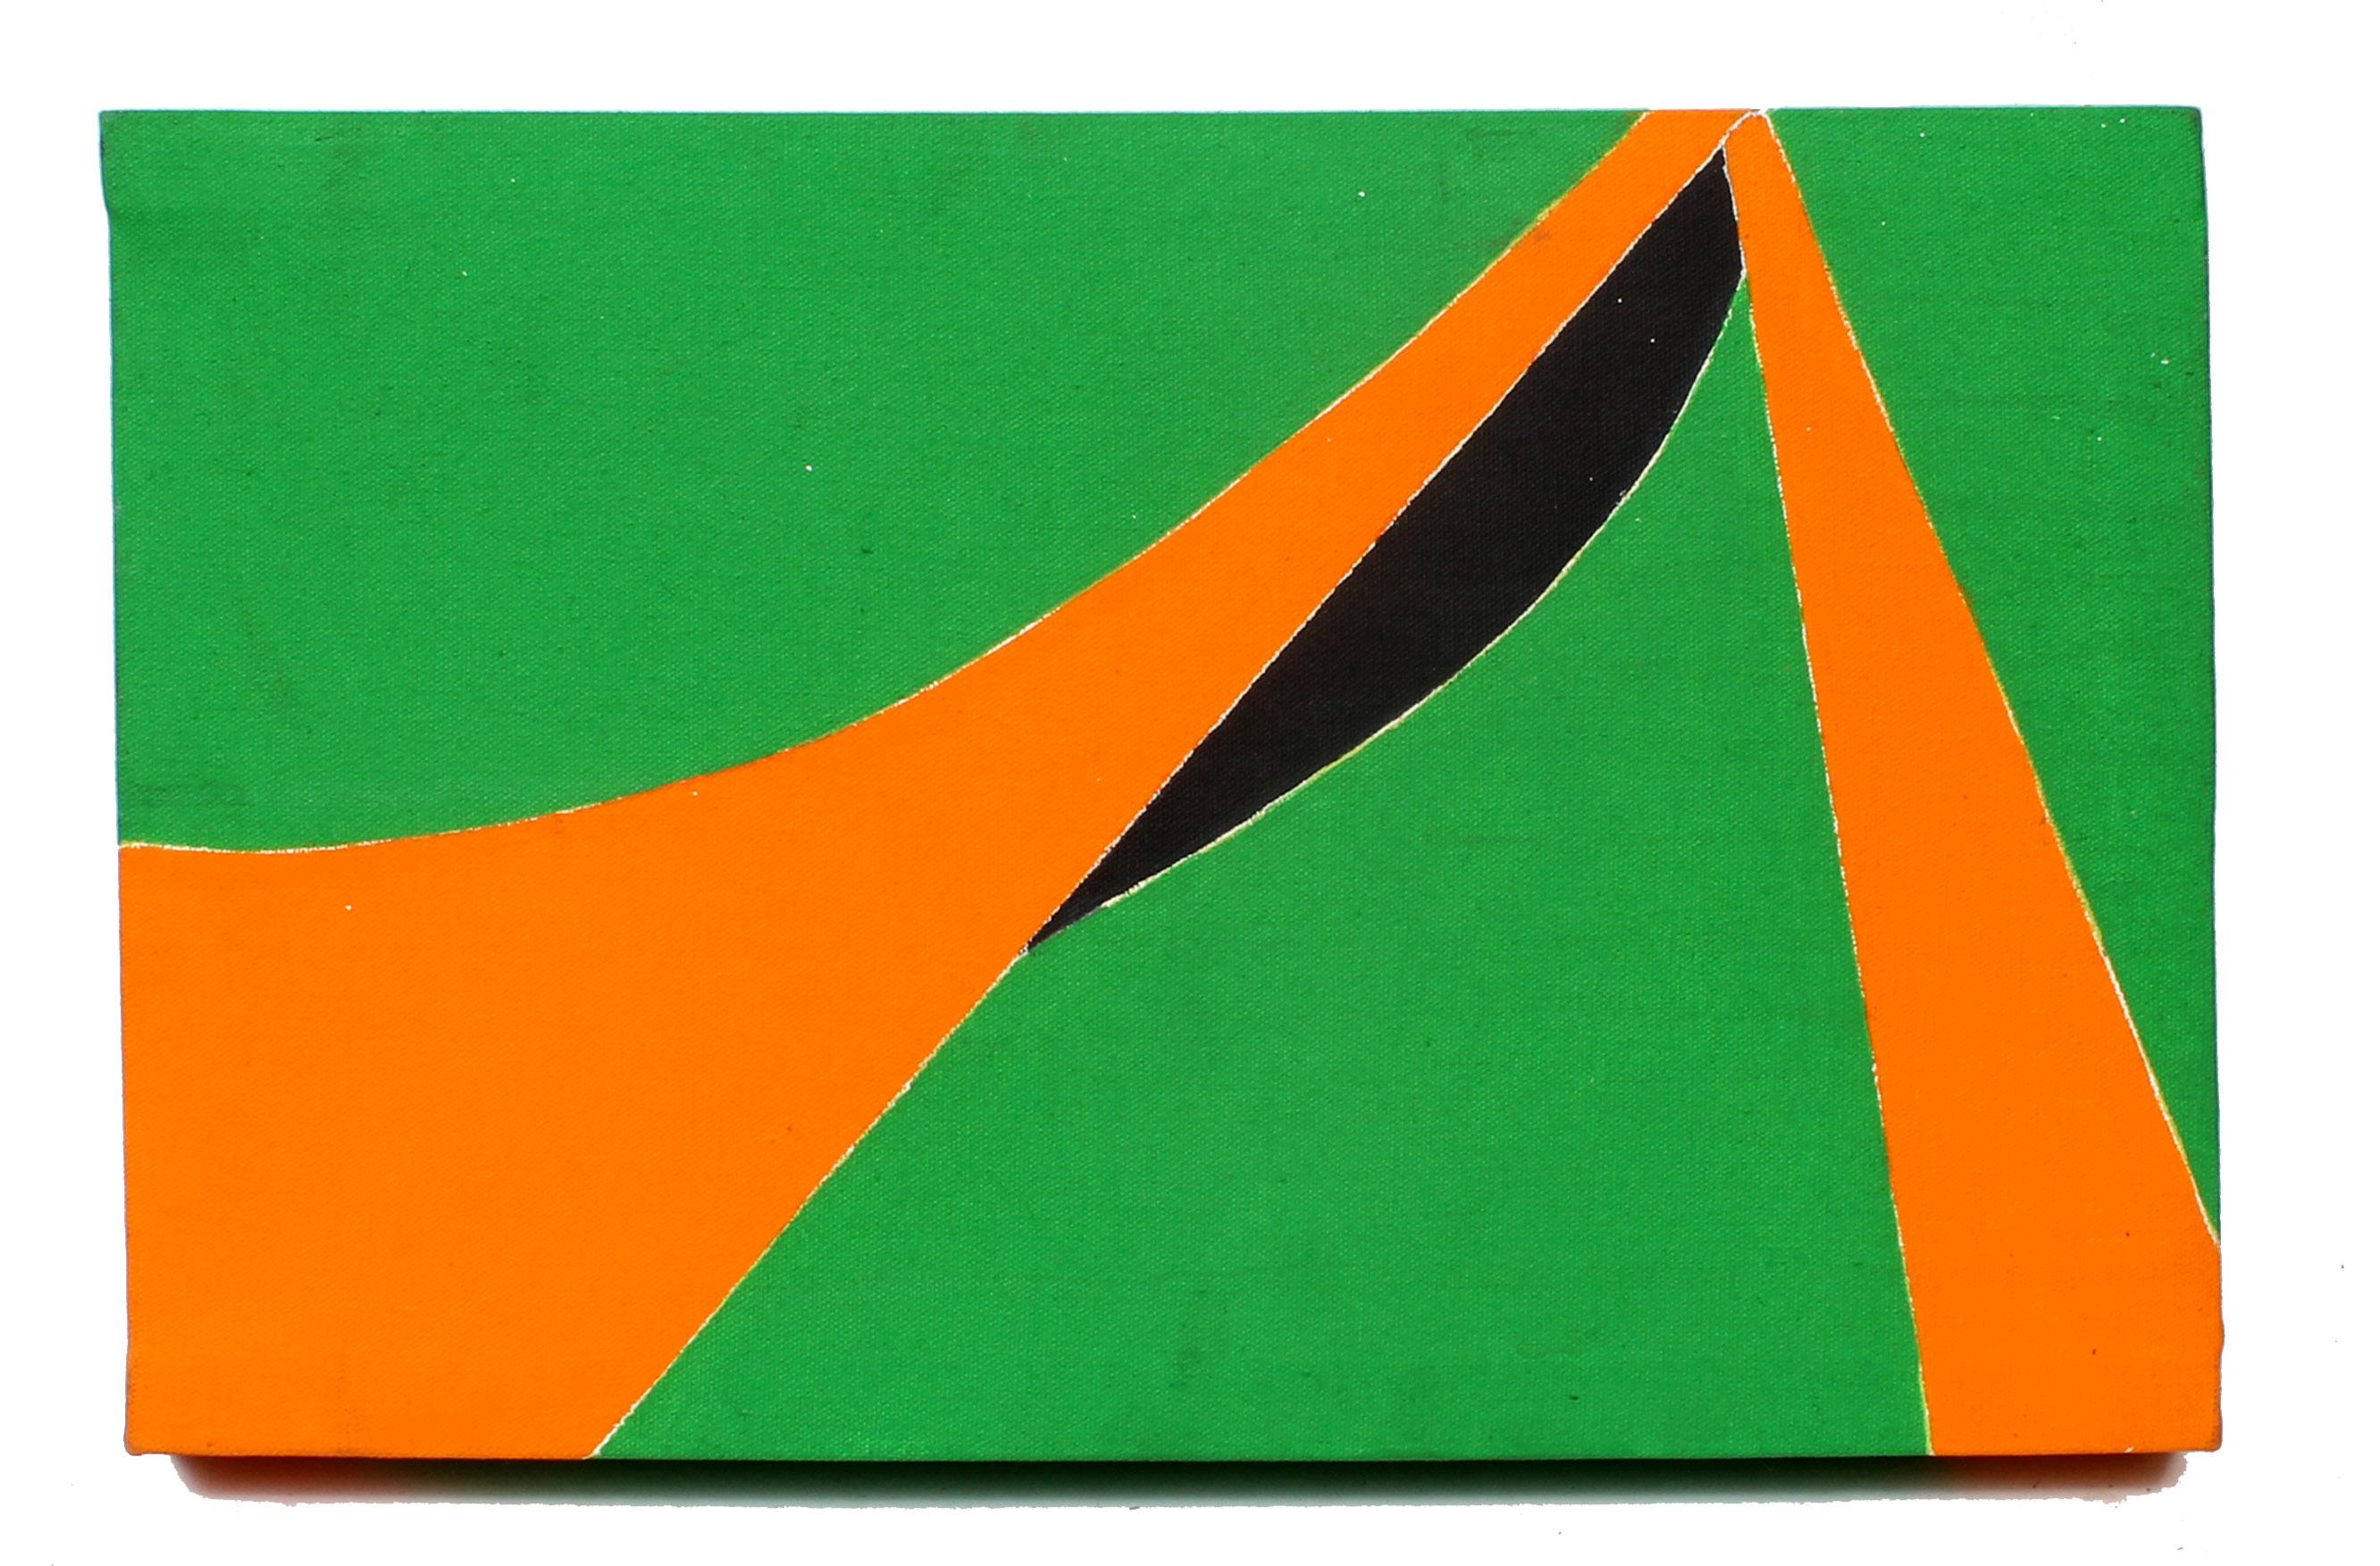 Minimalistisches, minimalistisches Gemälde, New York, amerikanische Künstlerin, Orange, Grün, Schwarz, 1970 – Painting von Martica Miguens